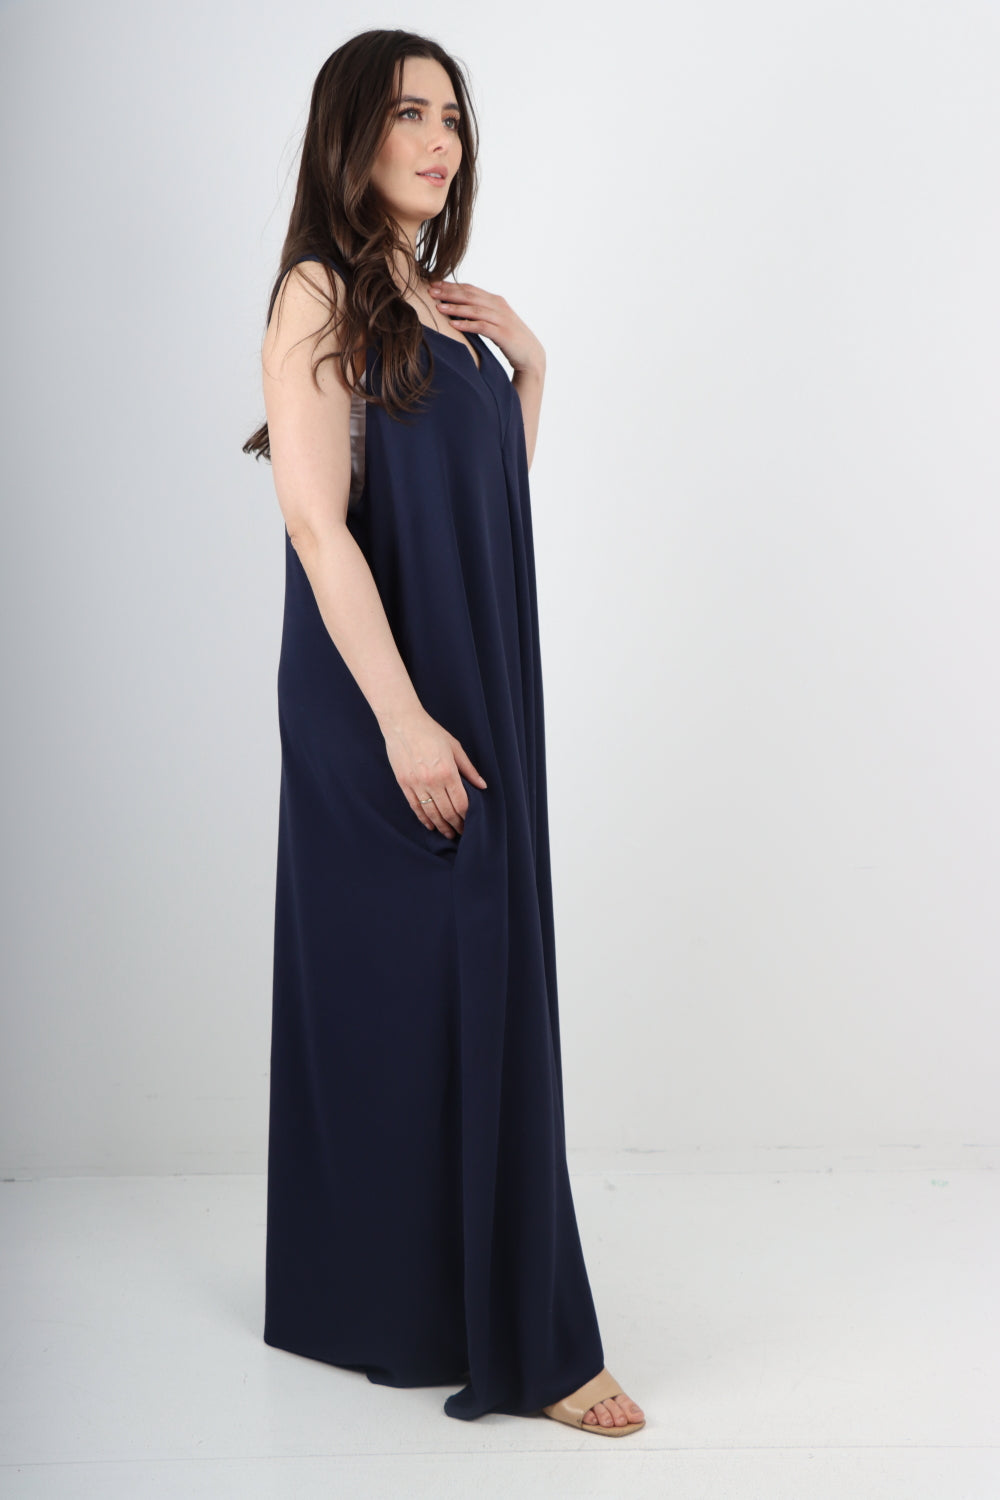 Italian Plain Sleeveless V Neck Side Pockets Maxi Dress